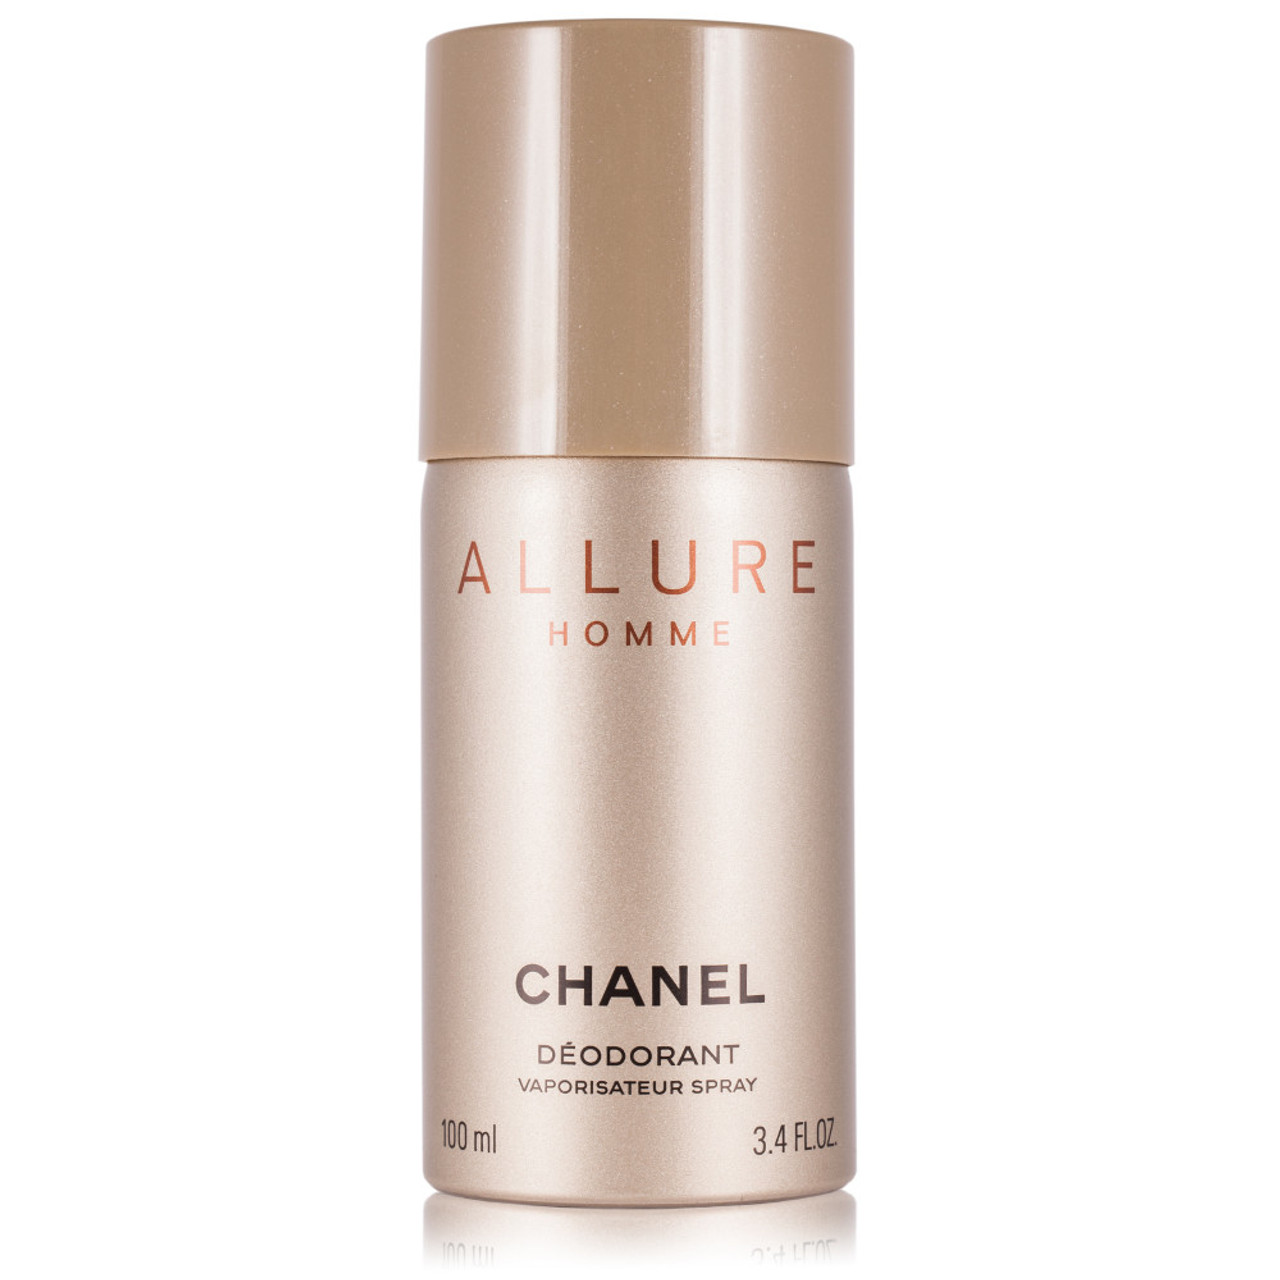 Chanel Men's Allure Homme Sport Deodorant Spray 3.4 oz Fragrances  3145891239300 - Fragrances & Beauty, Allure Homme Sport - Jomashop